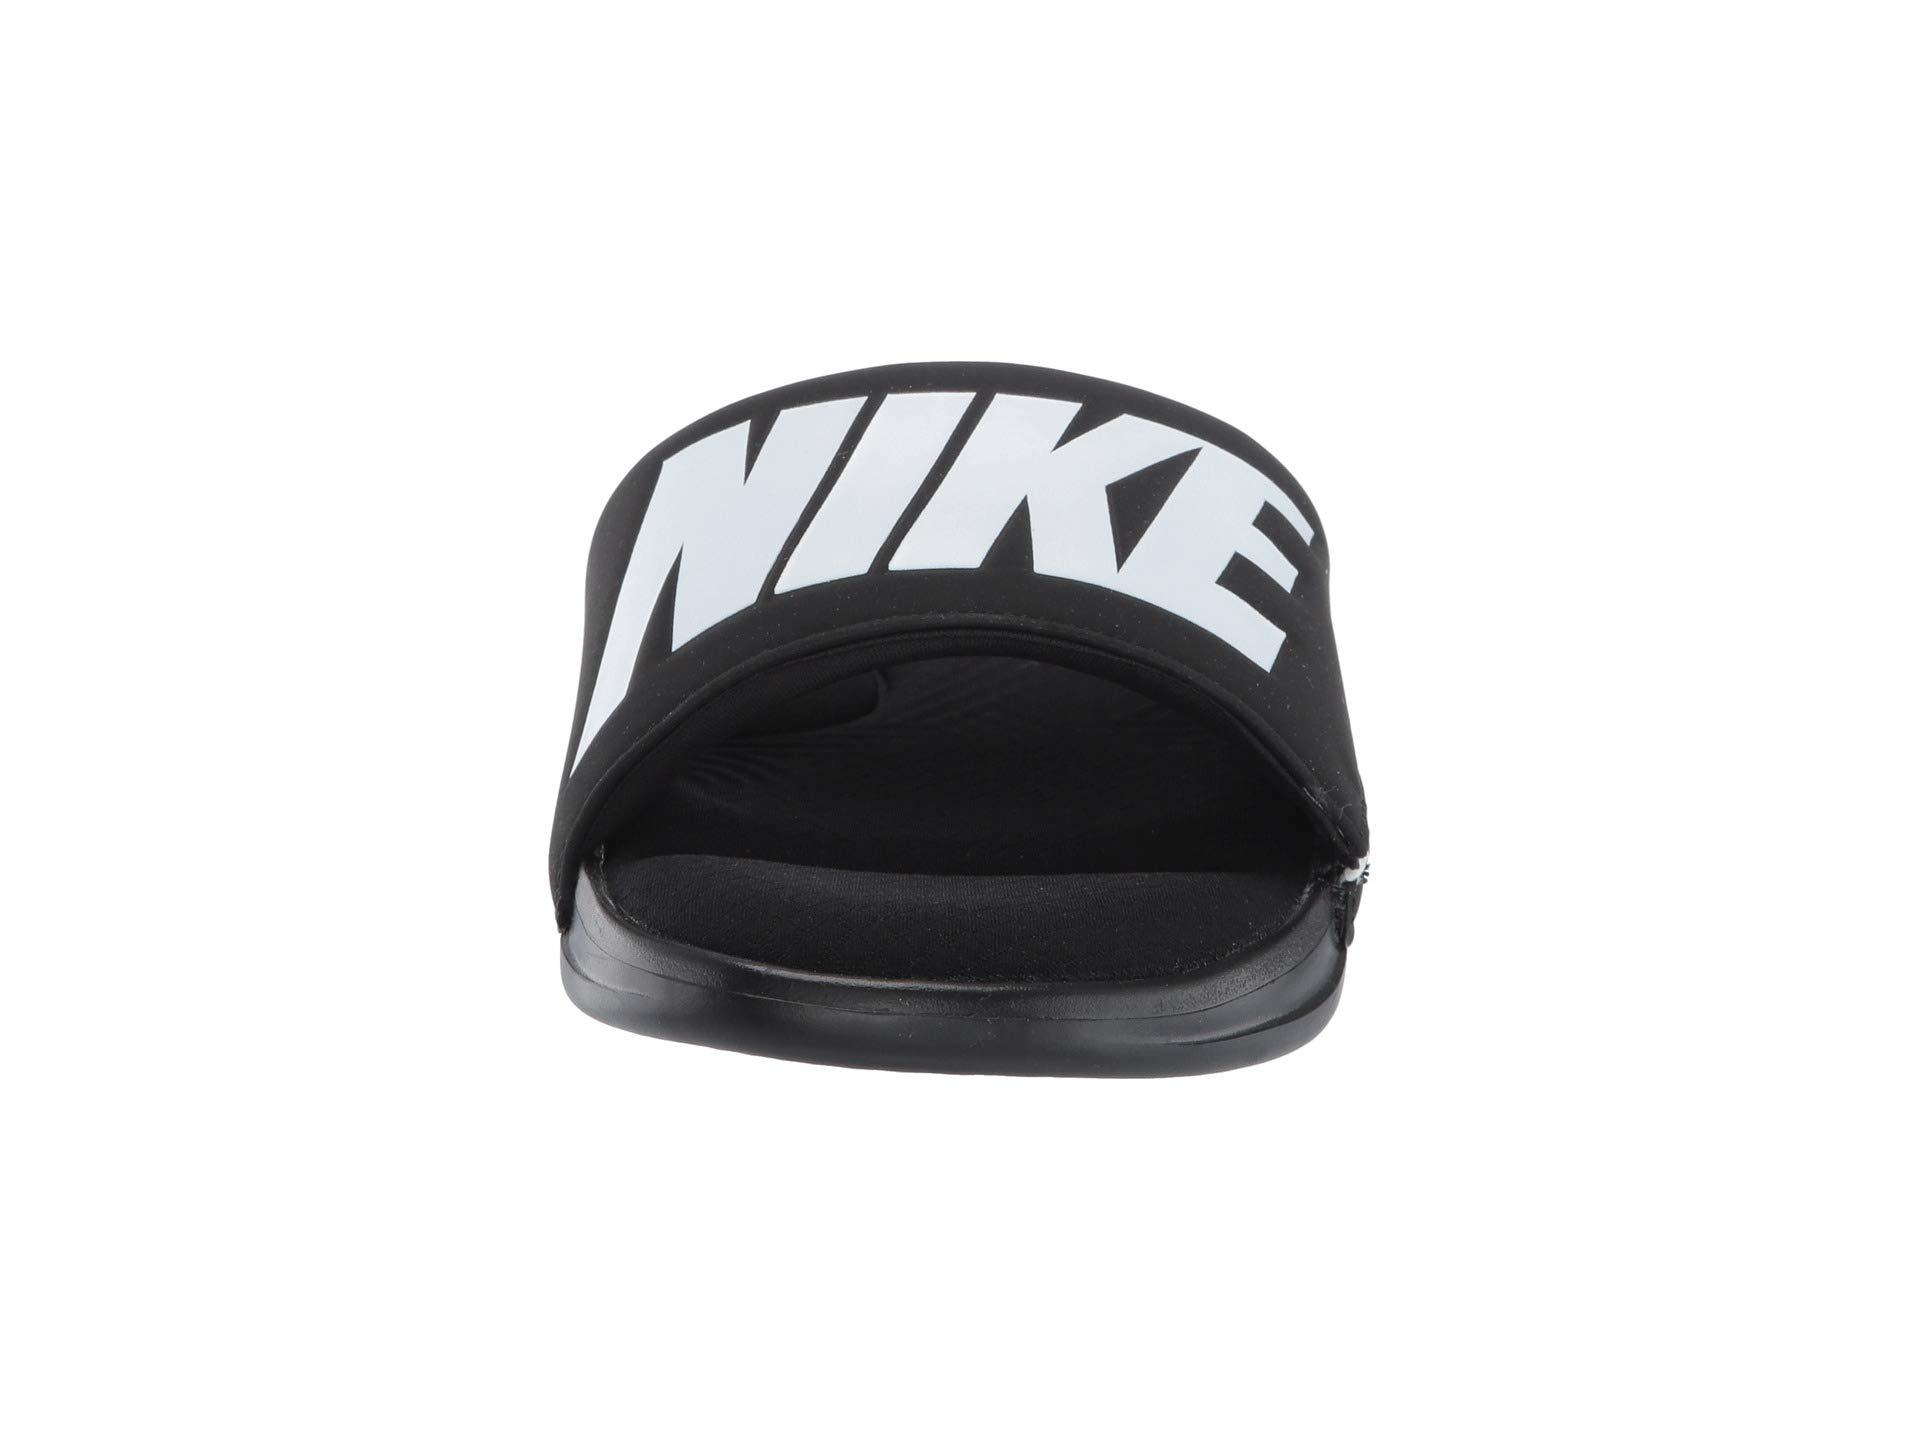 Nike Synthetic Ultra Comfort 3 Slide Sandal in Black/White/Black (Black)  for Men | Lyst